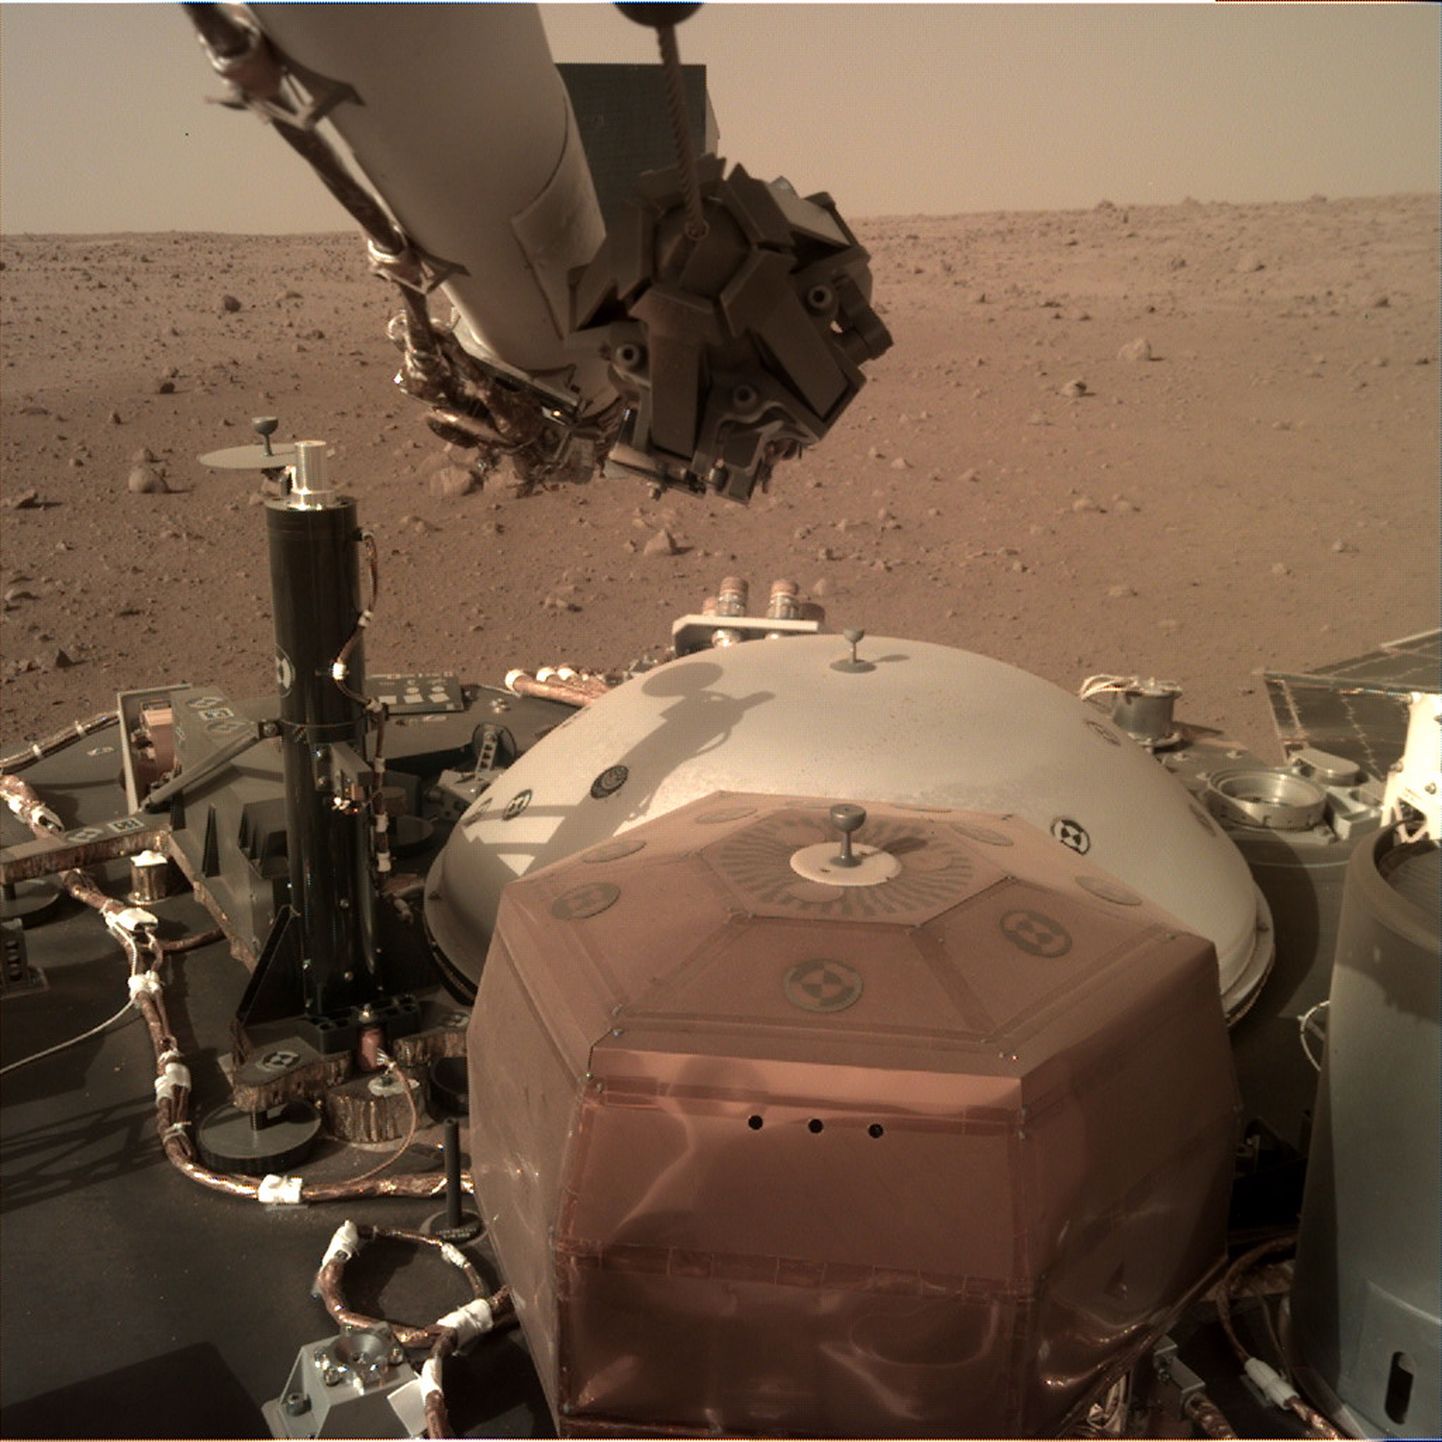 NASA fotol on näha InSight maandurit asetamas Marsi pinnale seismomeetrit.